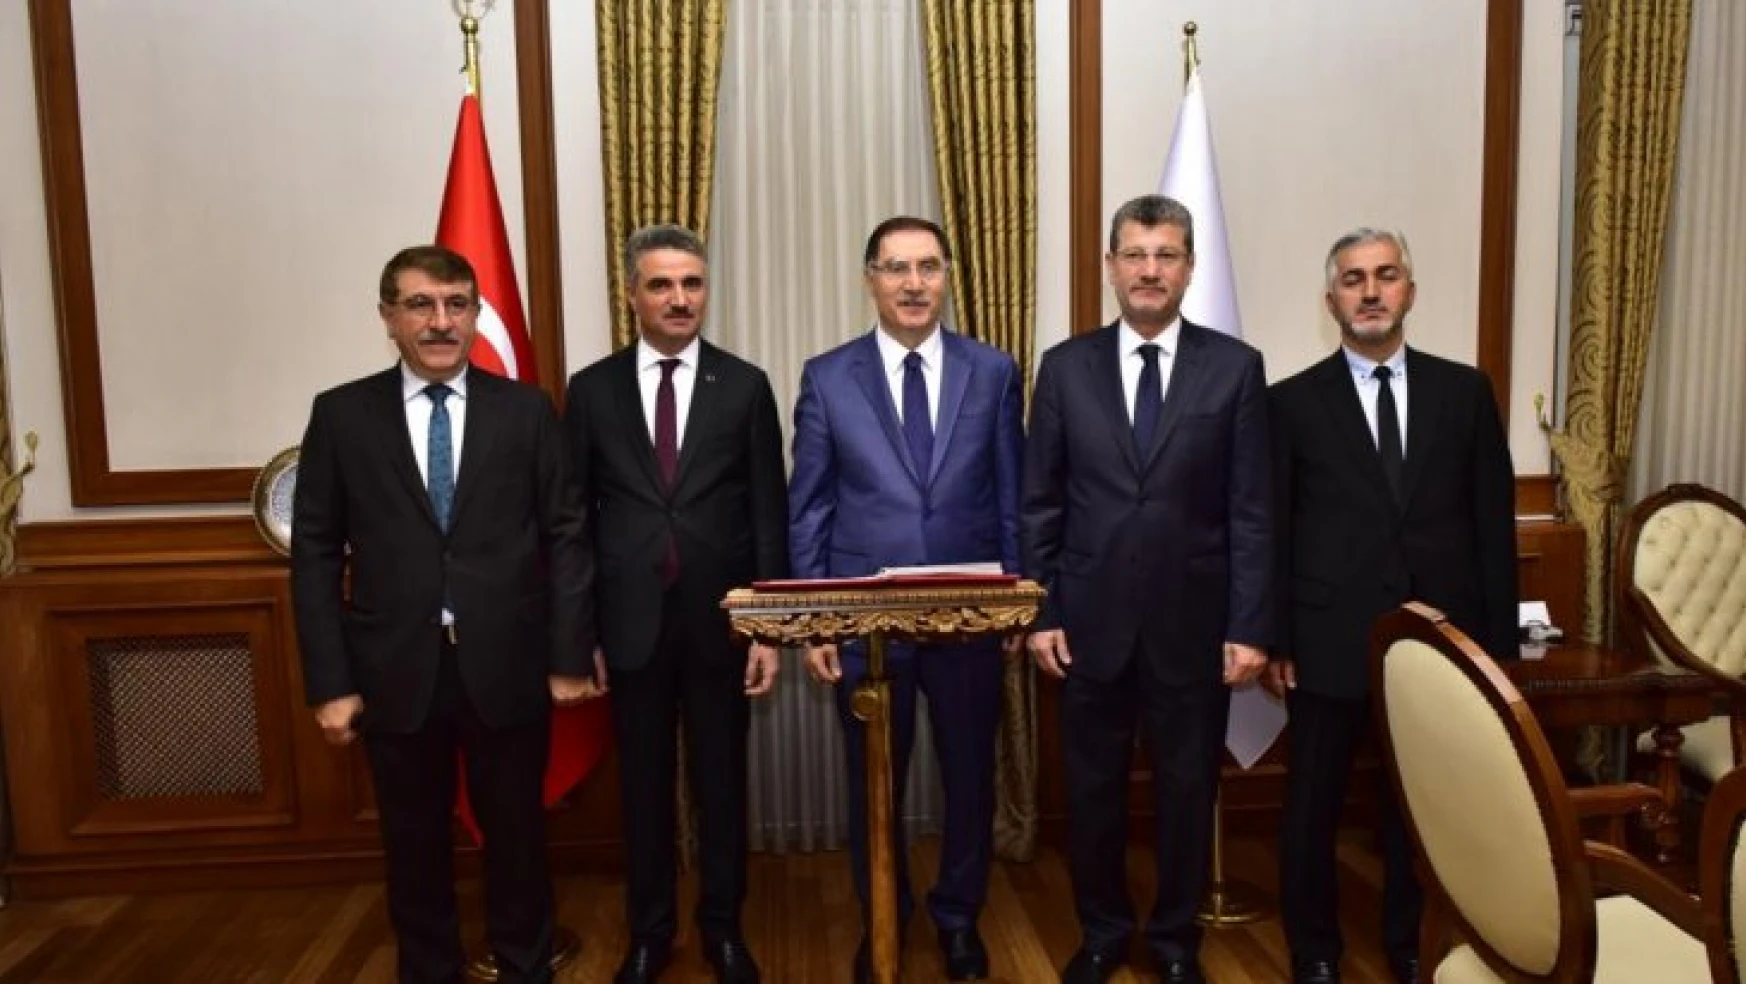 Kamu Başdenetçisi (Ombudsman) Şeref Malkoç, Vali Aydın Baruş'u Ziyaret Etti